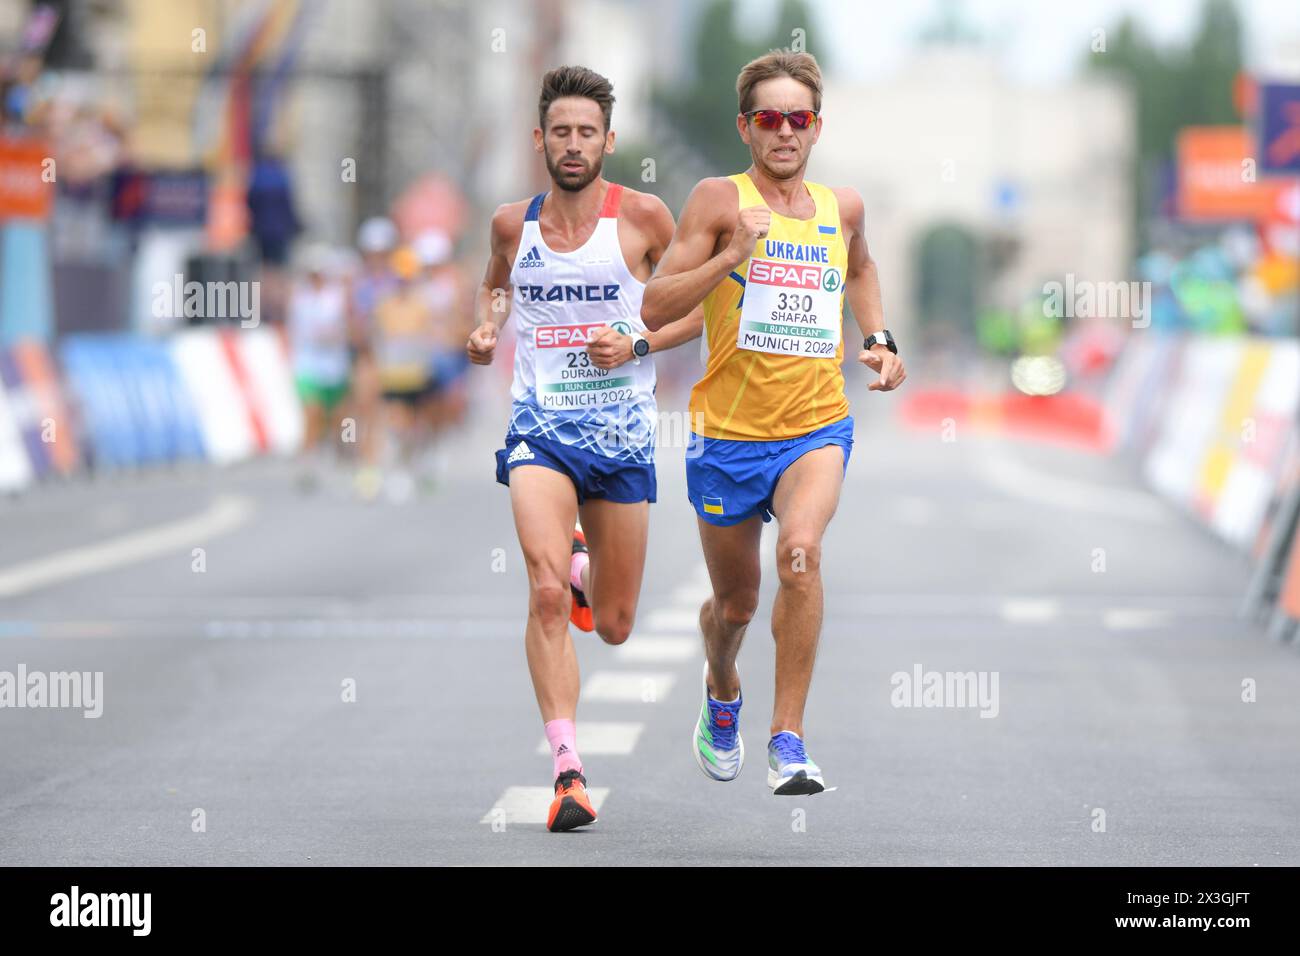 Vitaliy Shafar (Ukraine), Yohan Durand (Frankreich). Herren Marathon. Europameisterschaften München 2022. Stockfoto